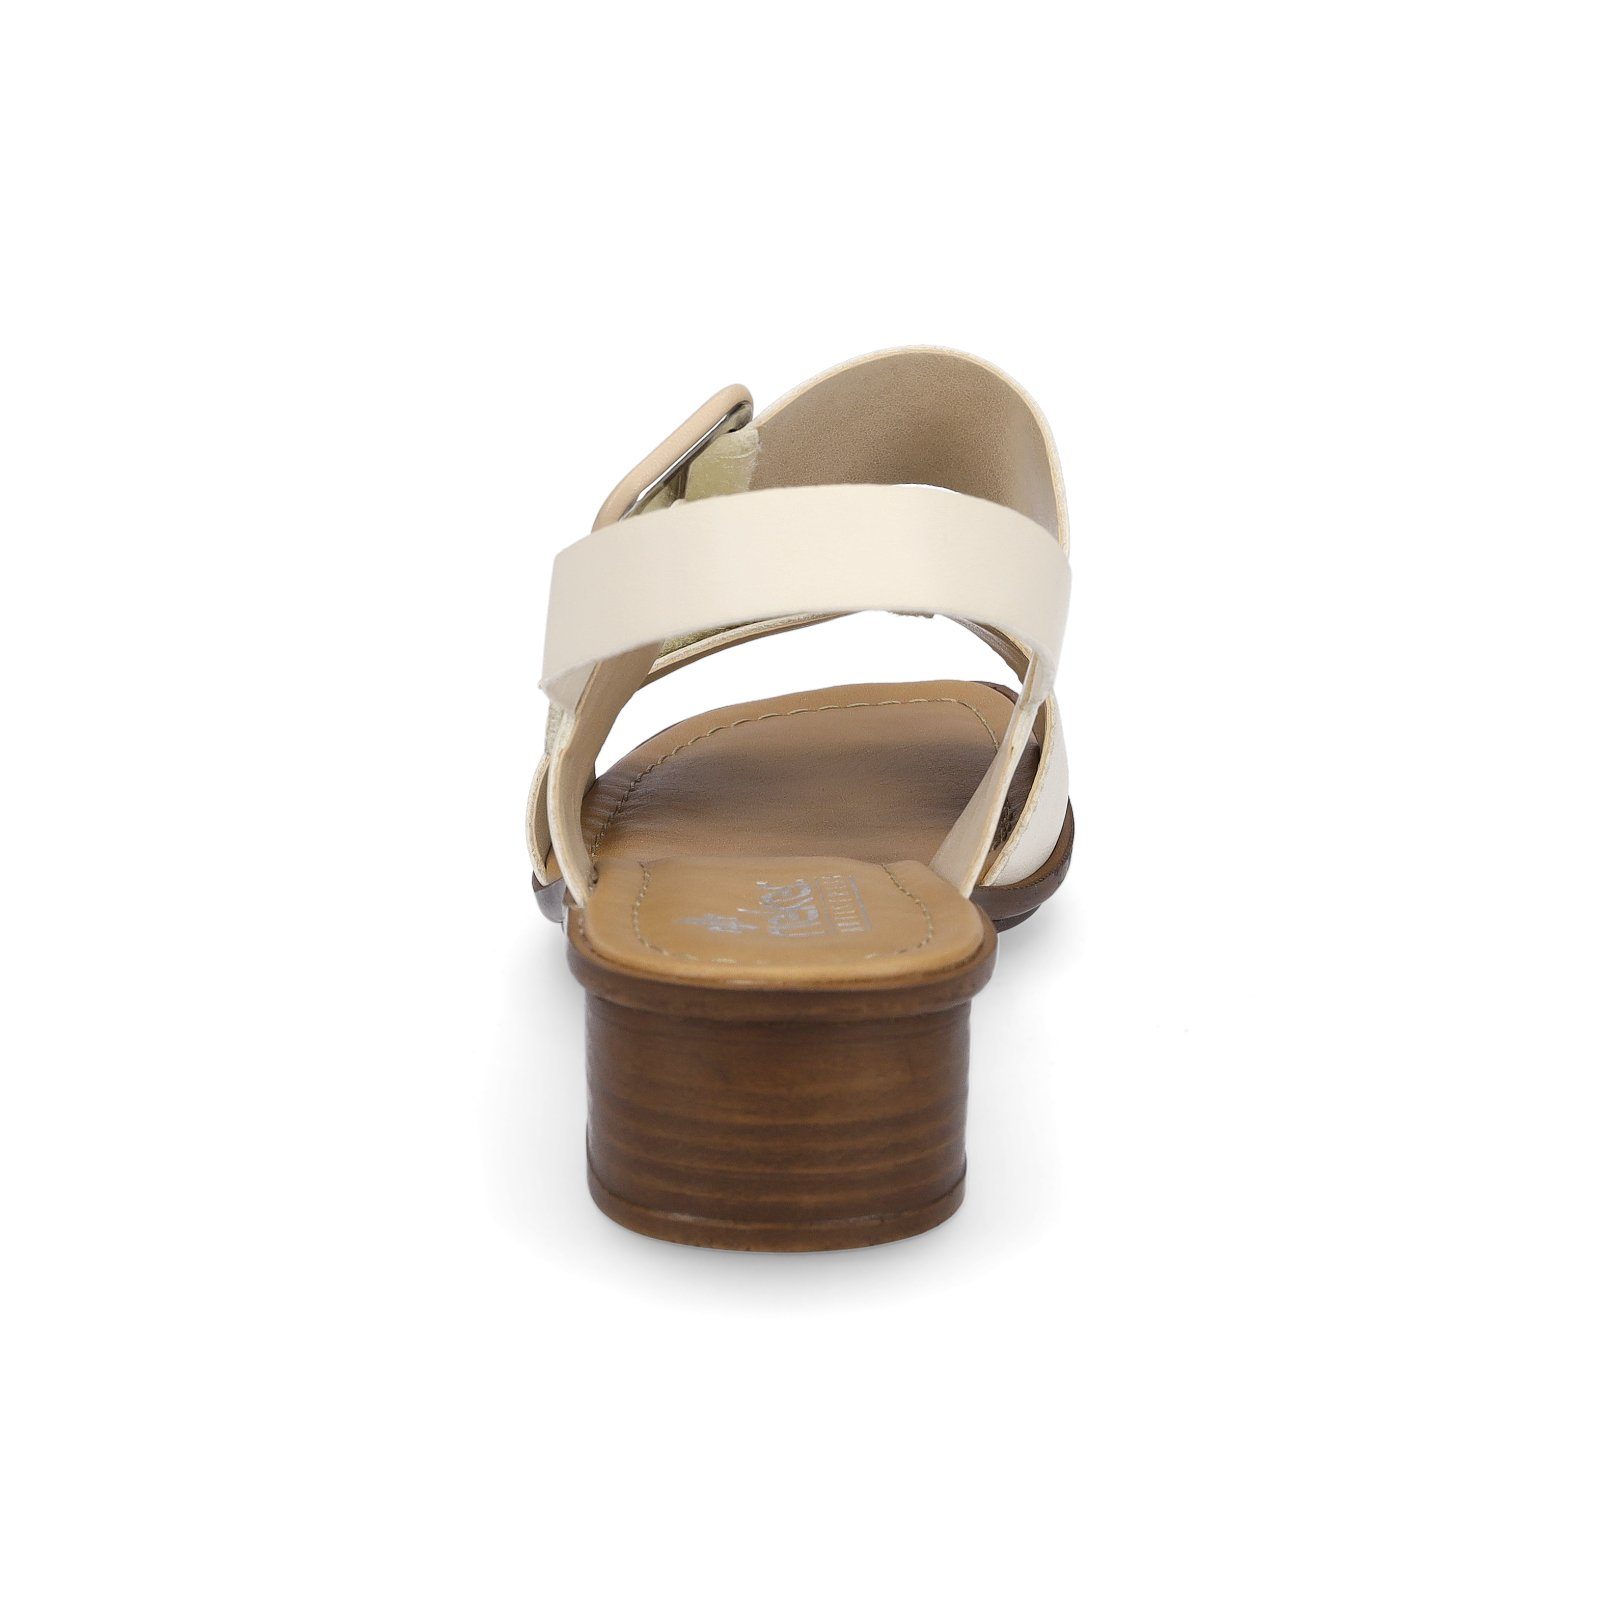 (18150106) Sandalette beige porzellan Damen Rieker creme Rieker Sandalette